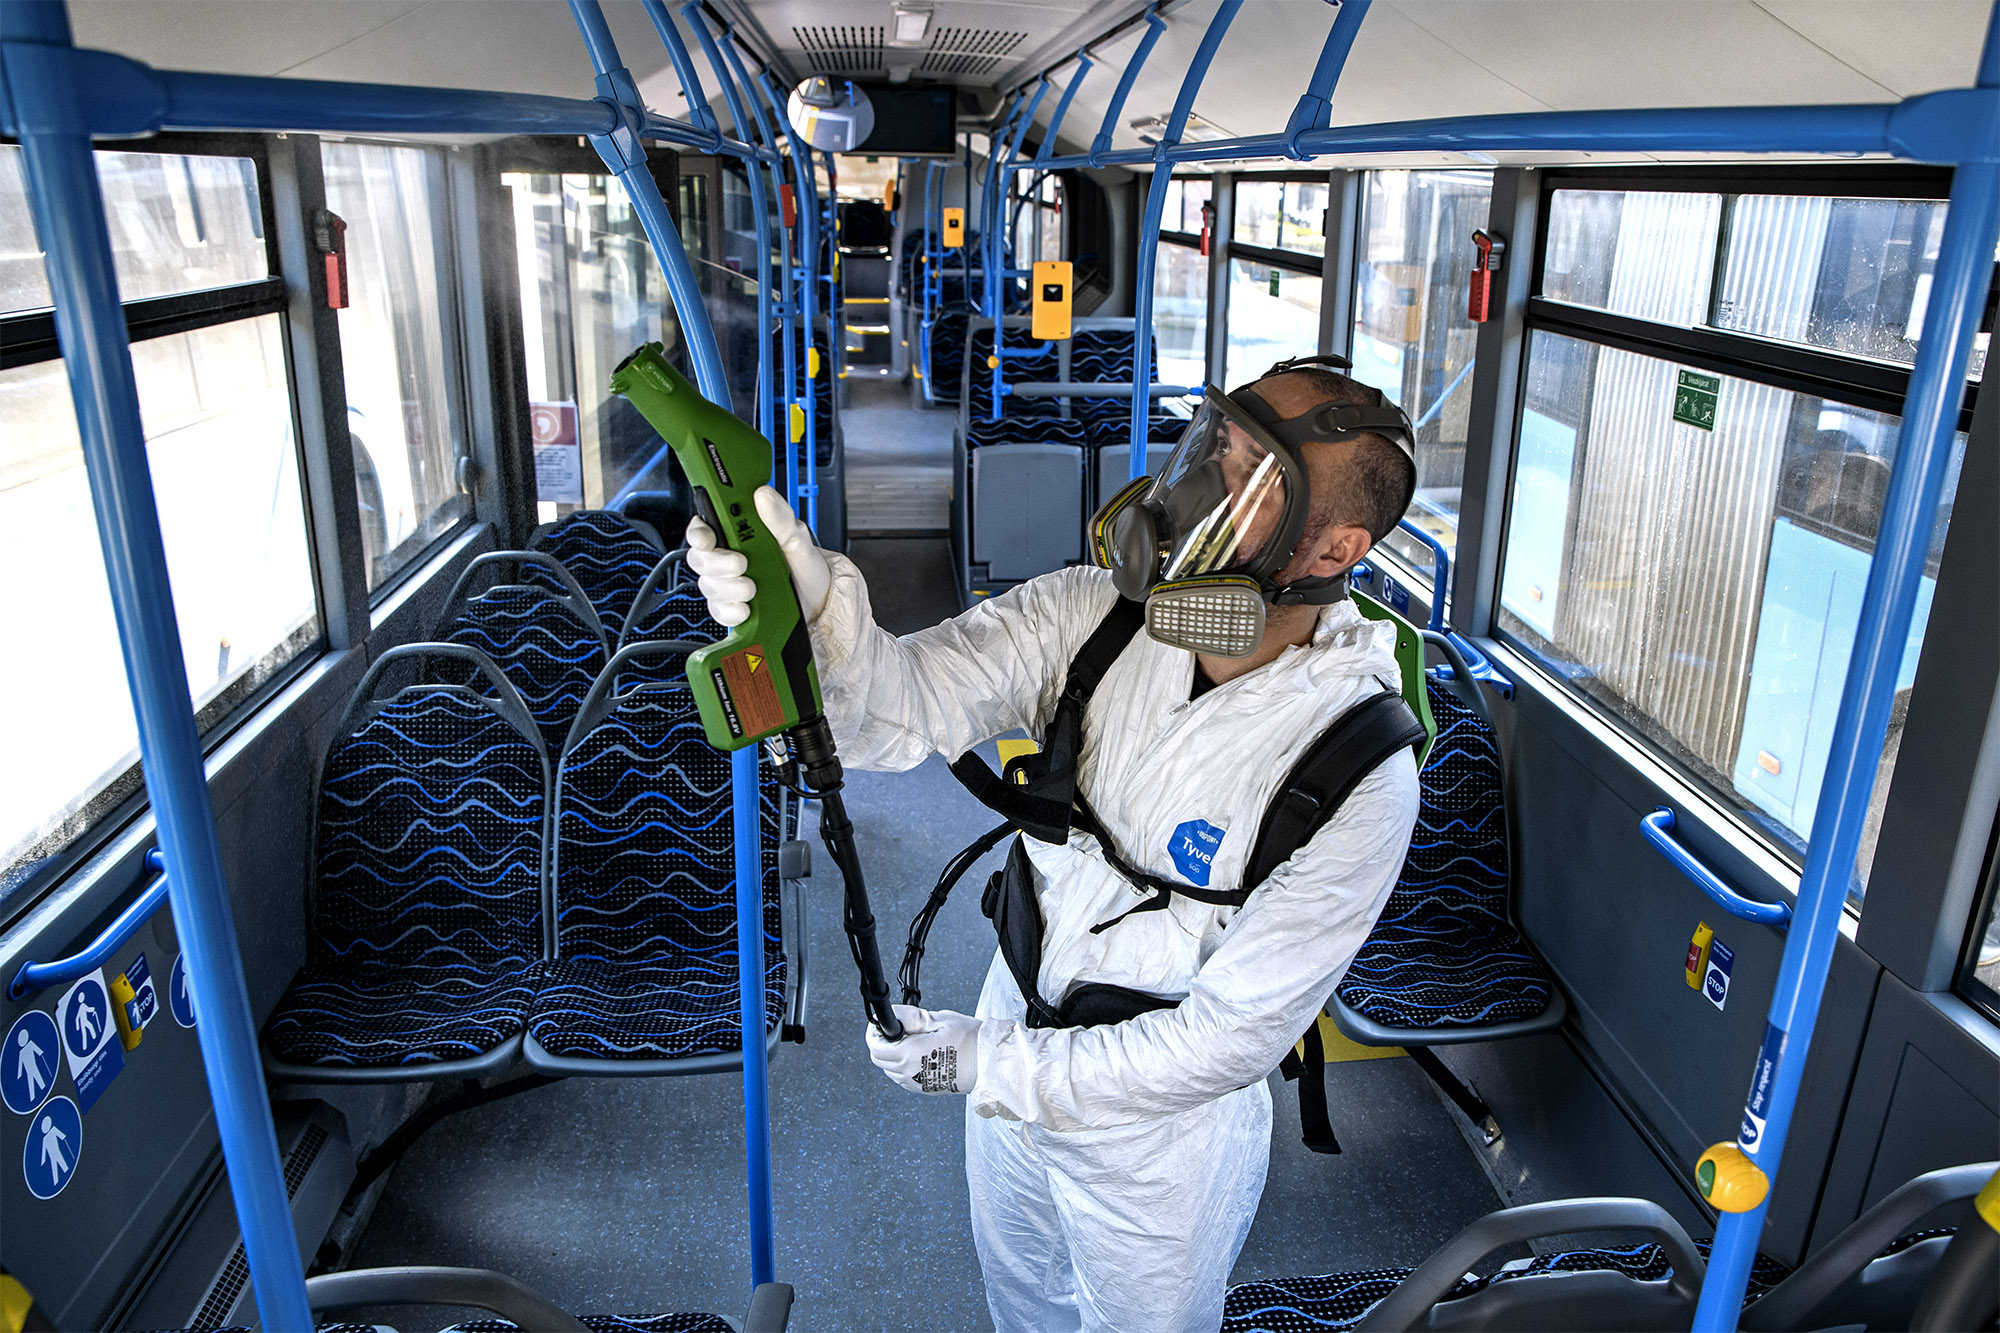 A képen egy védőruhás szakember látható a busz belsejének tisztítása közben.